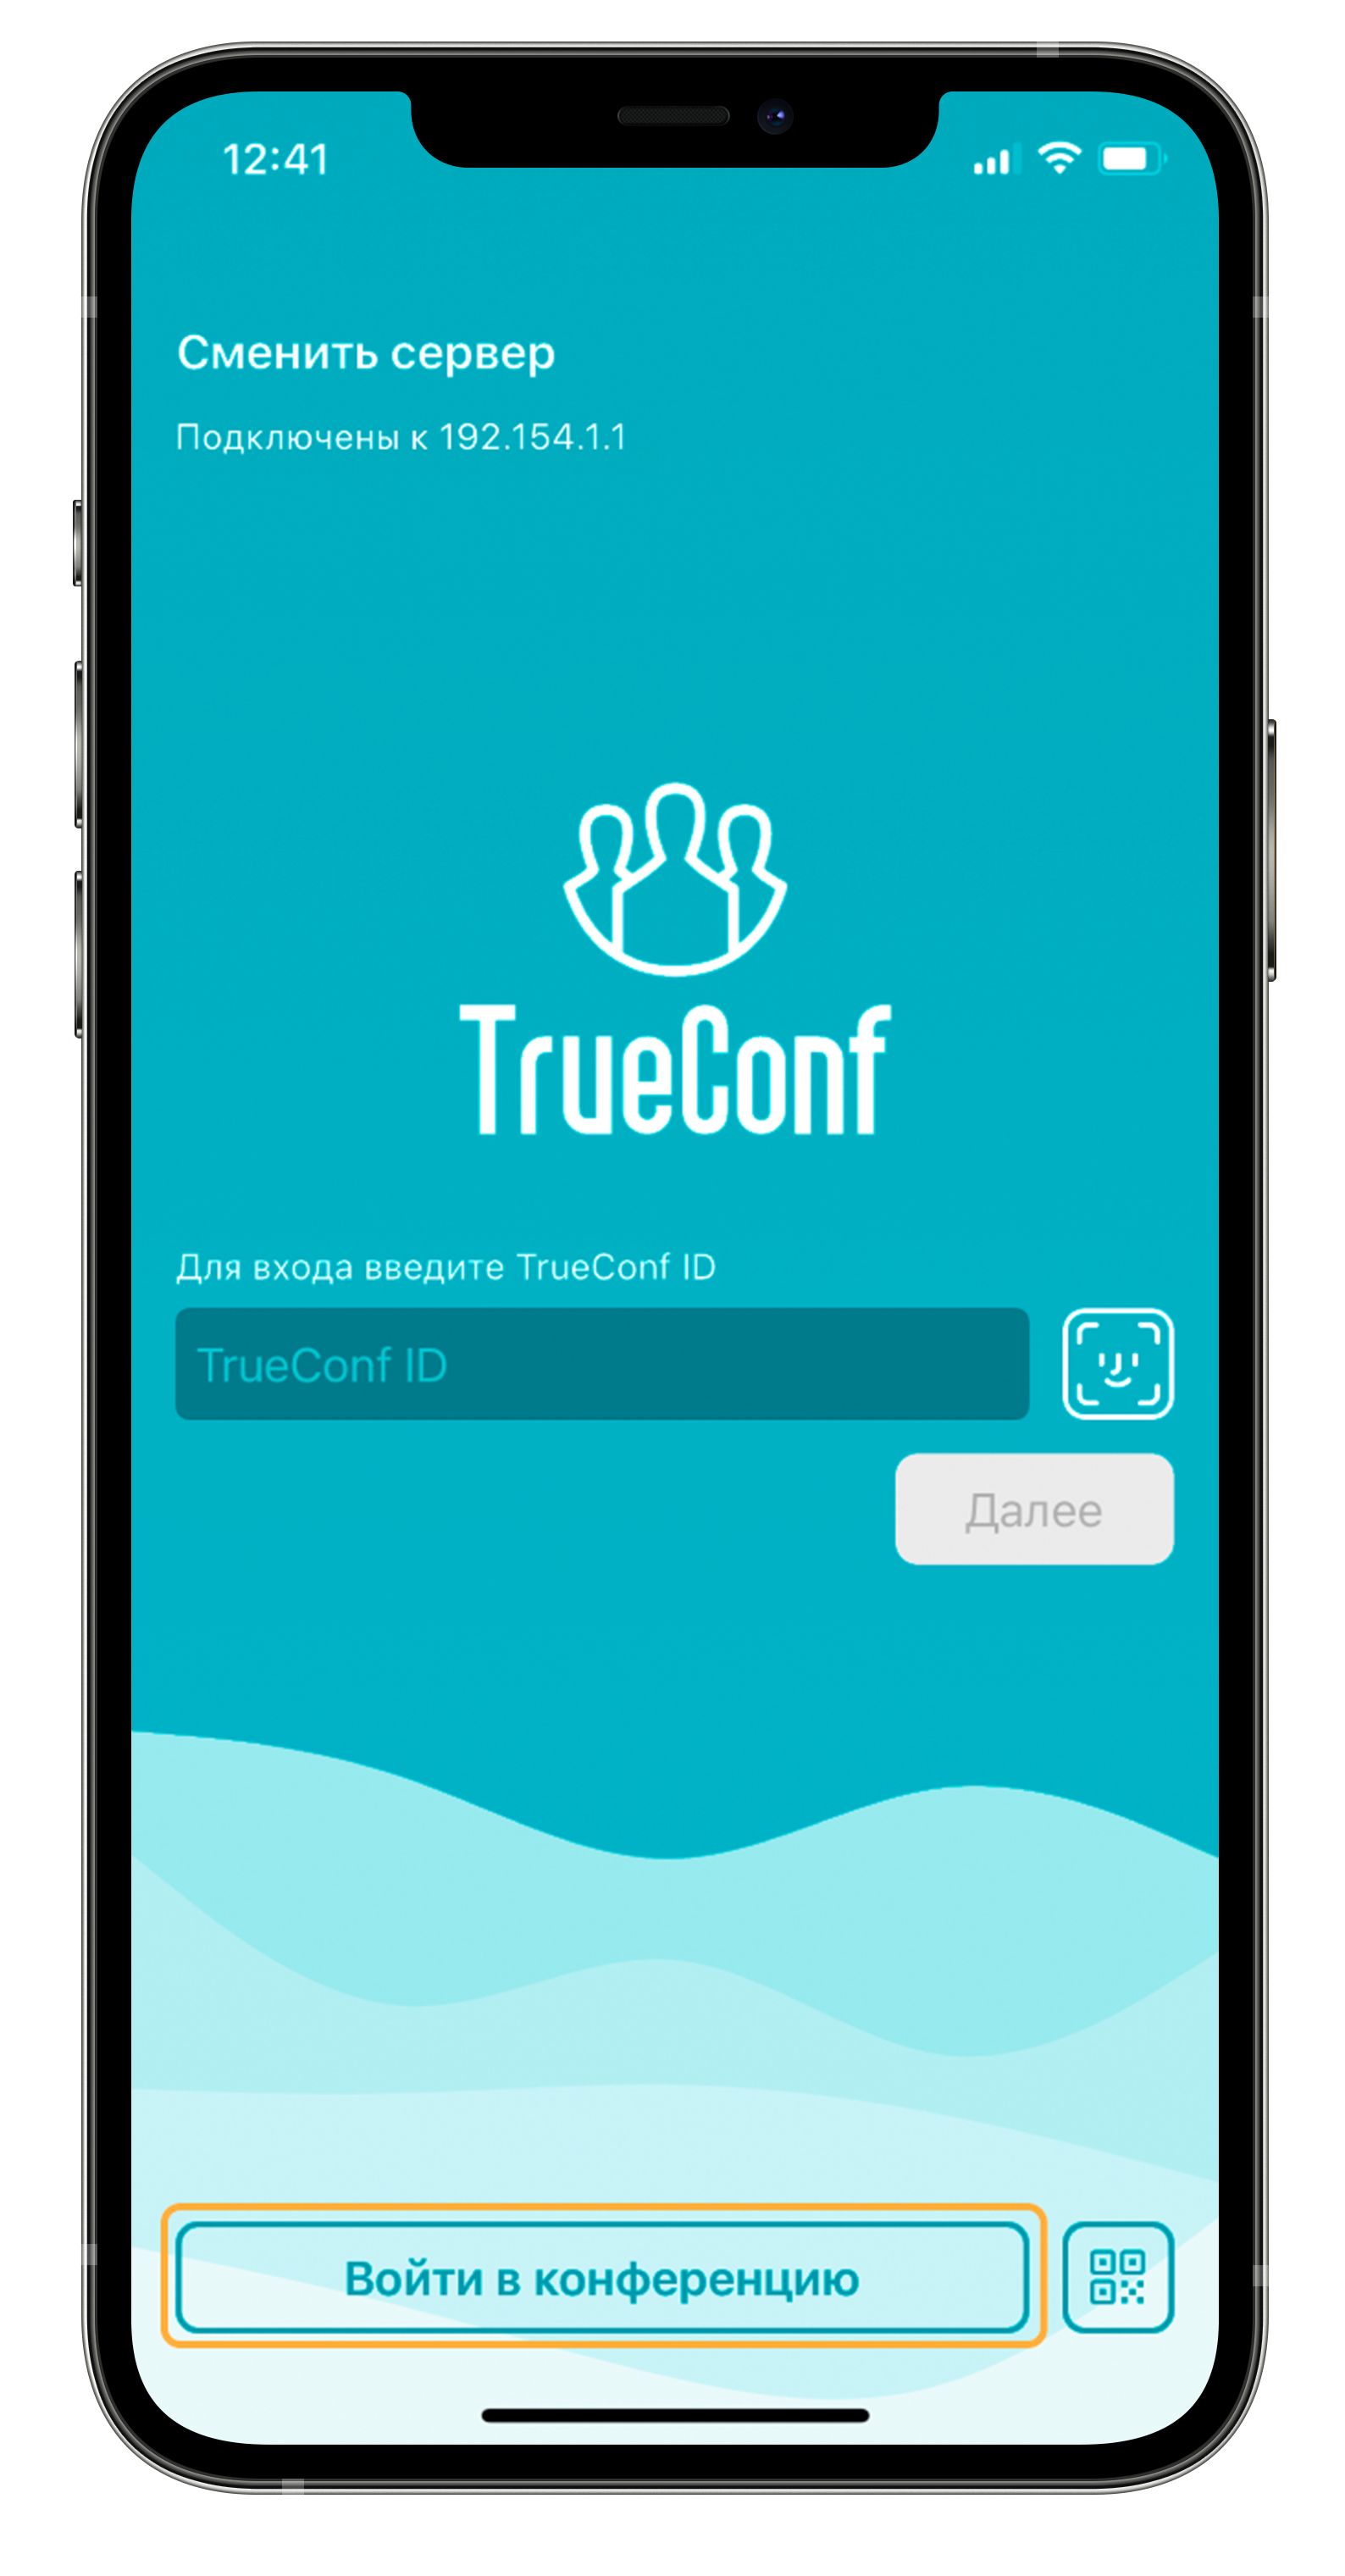 Обновление TrueConf 3.2.3 для iOS: автоматический фокус на выступающих, PIN и QR-коды для входа в конференцию 10